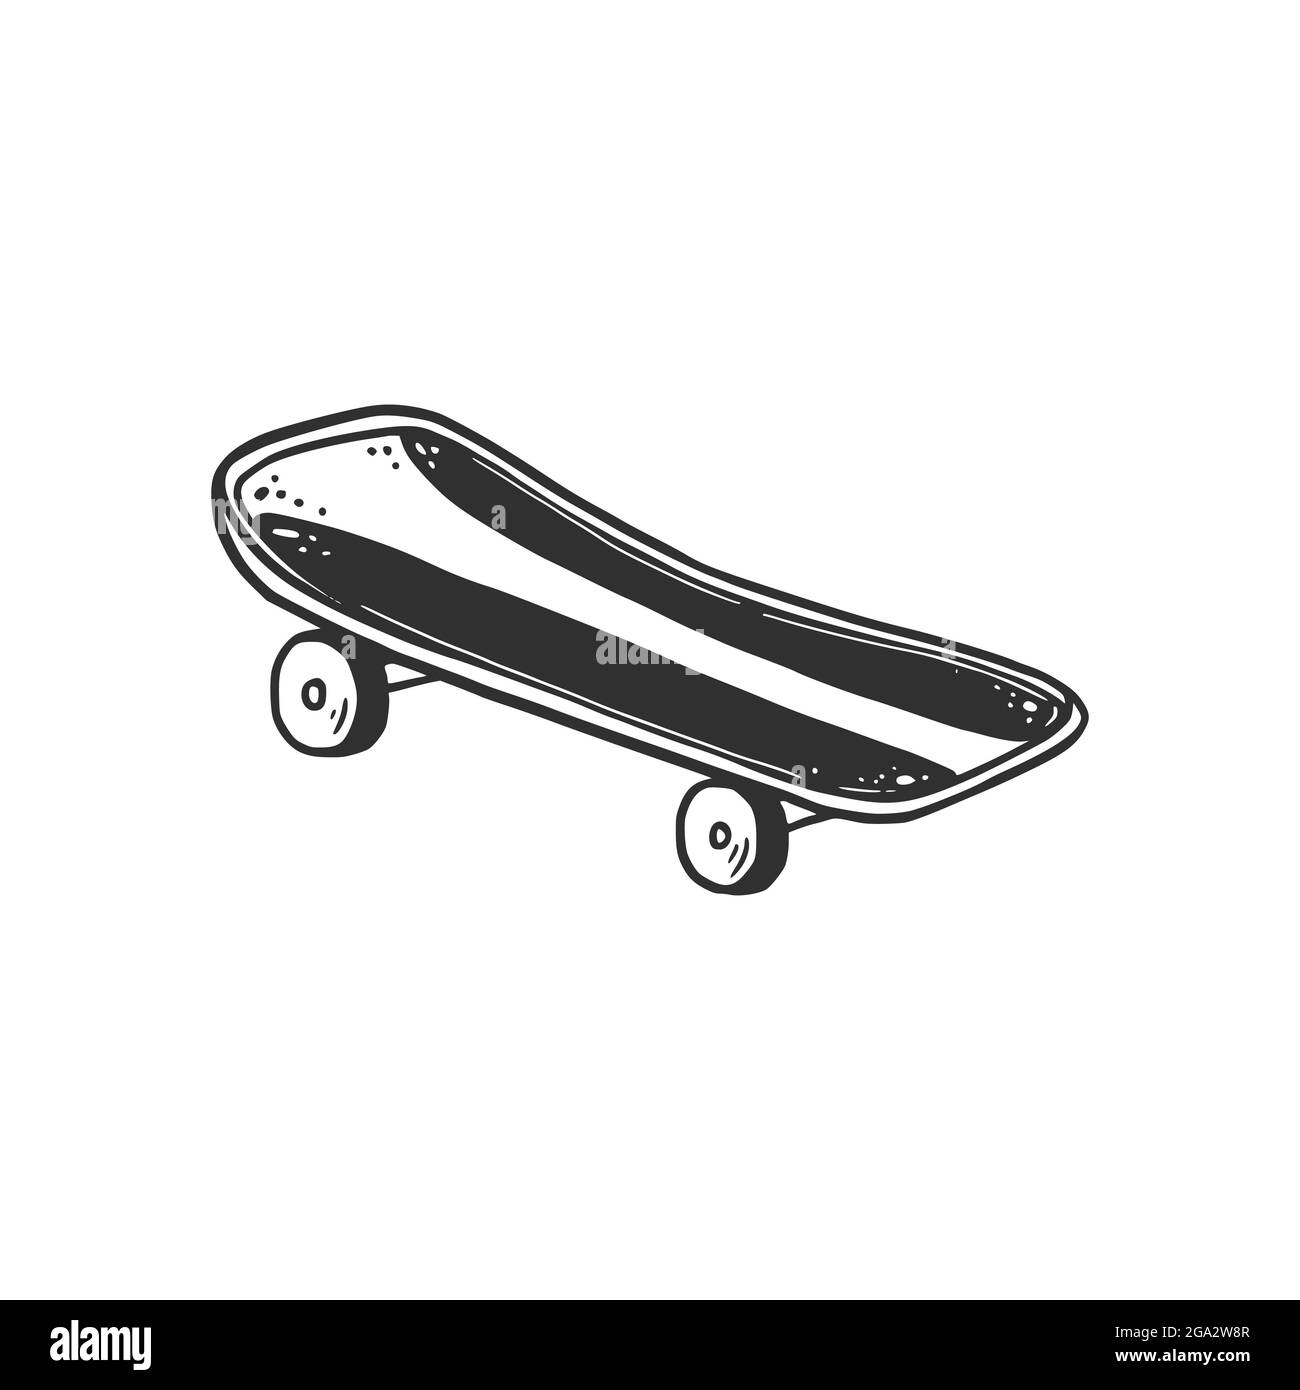 Skateboard disegnata a mano. Stile di schizzo Doodle. Linea di disegno  semplice skate teen. Illustrazione vettoriale isolata Immagine e Vettoriale  - Alamy